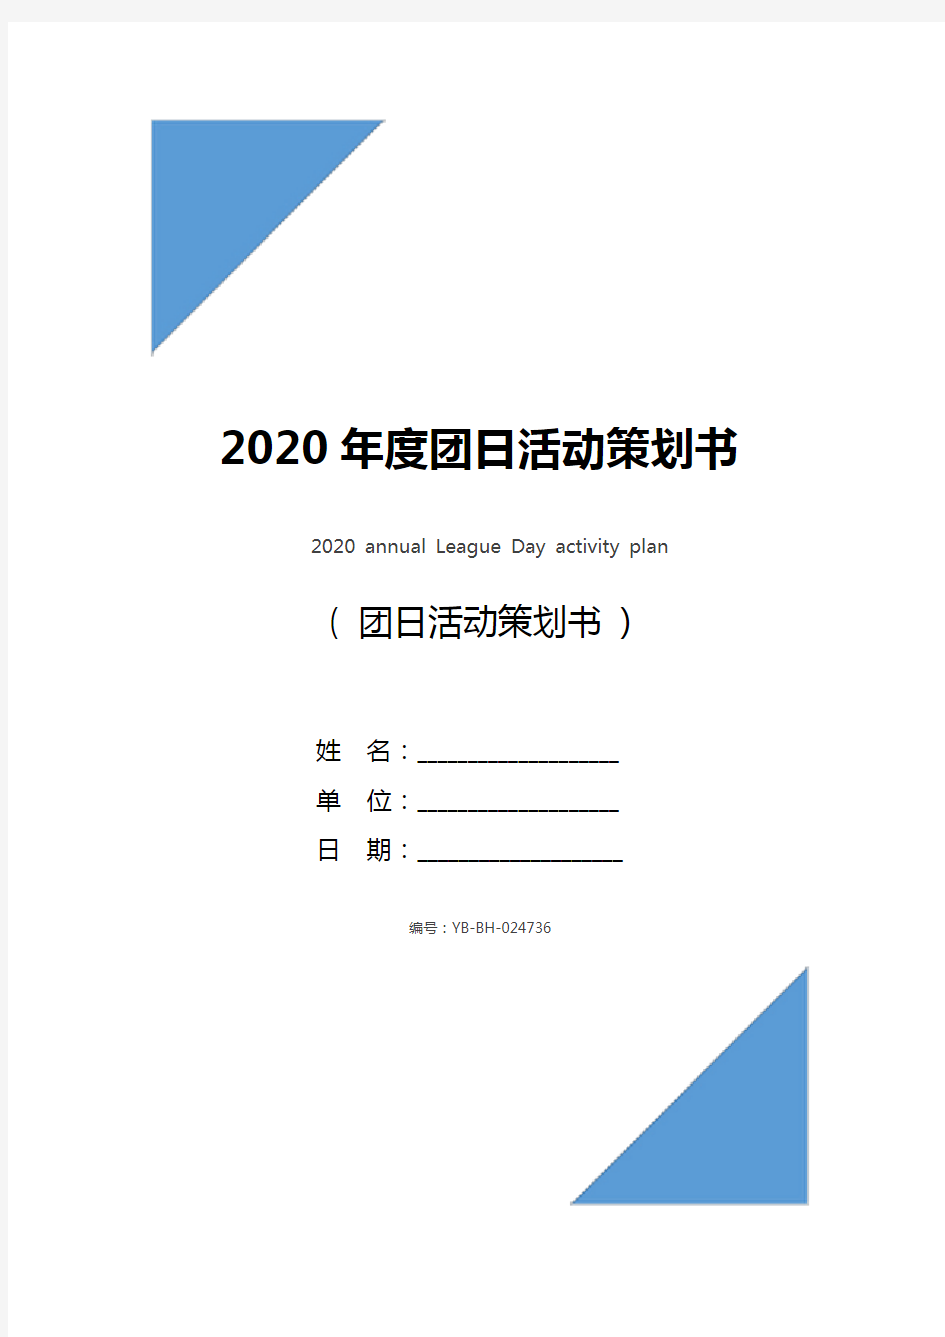 2020年度团日活动策划书